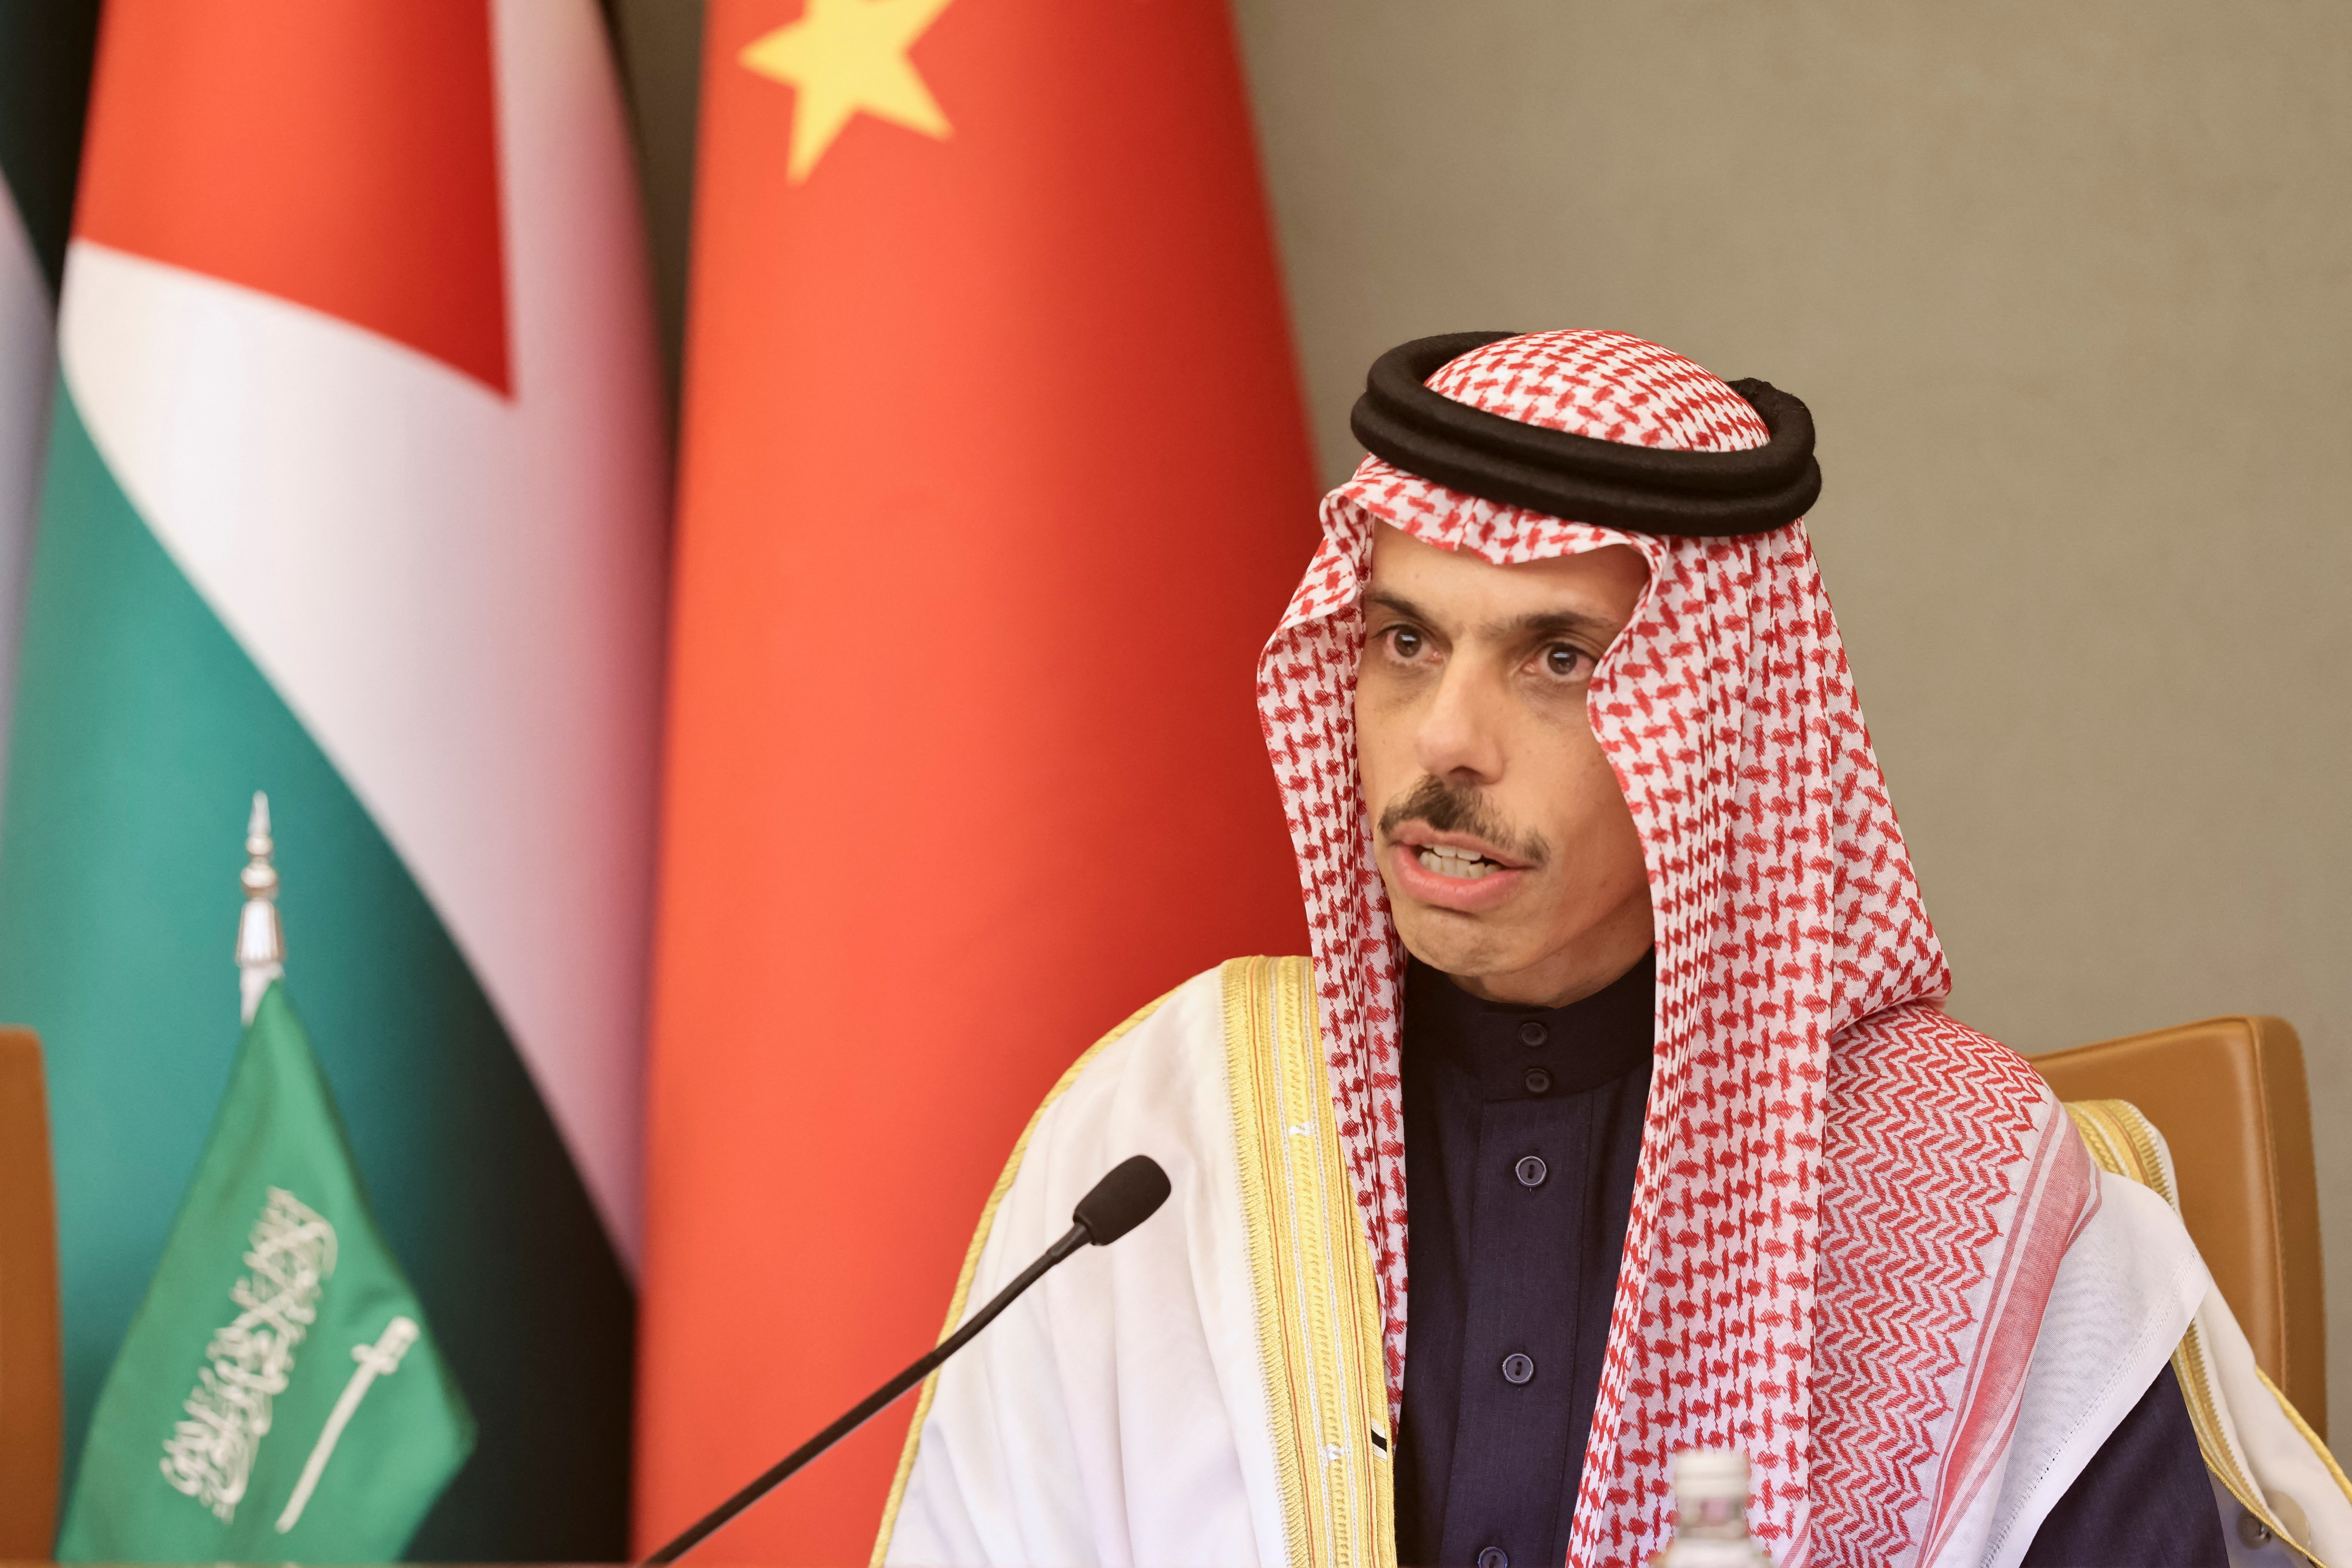 Arab Gulf Summit in Riyadh